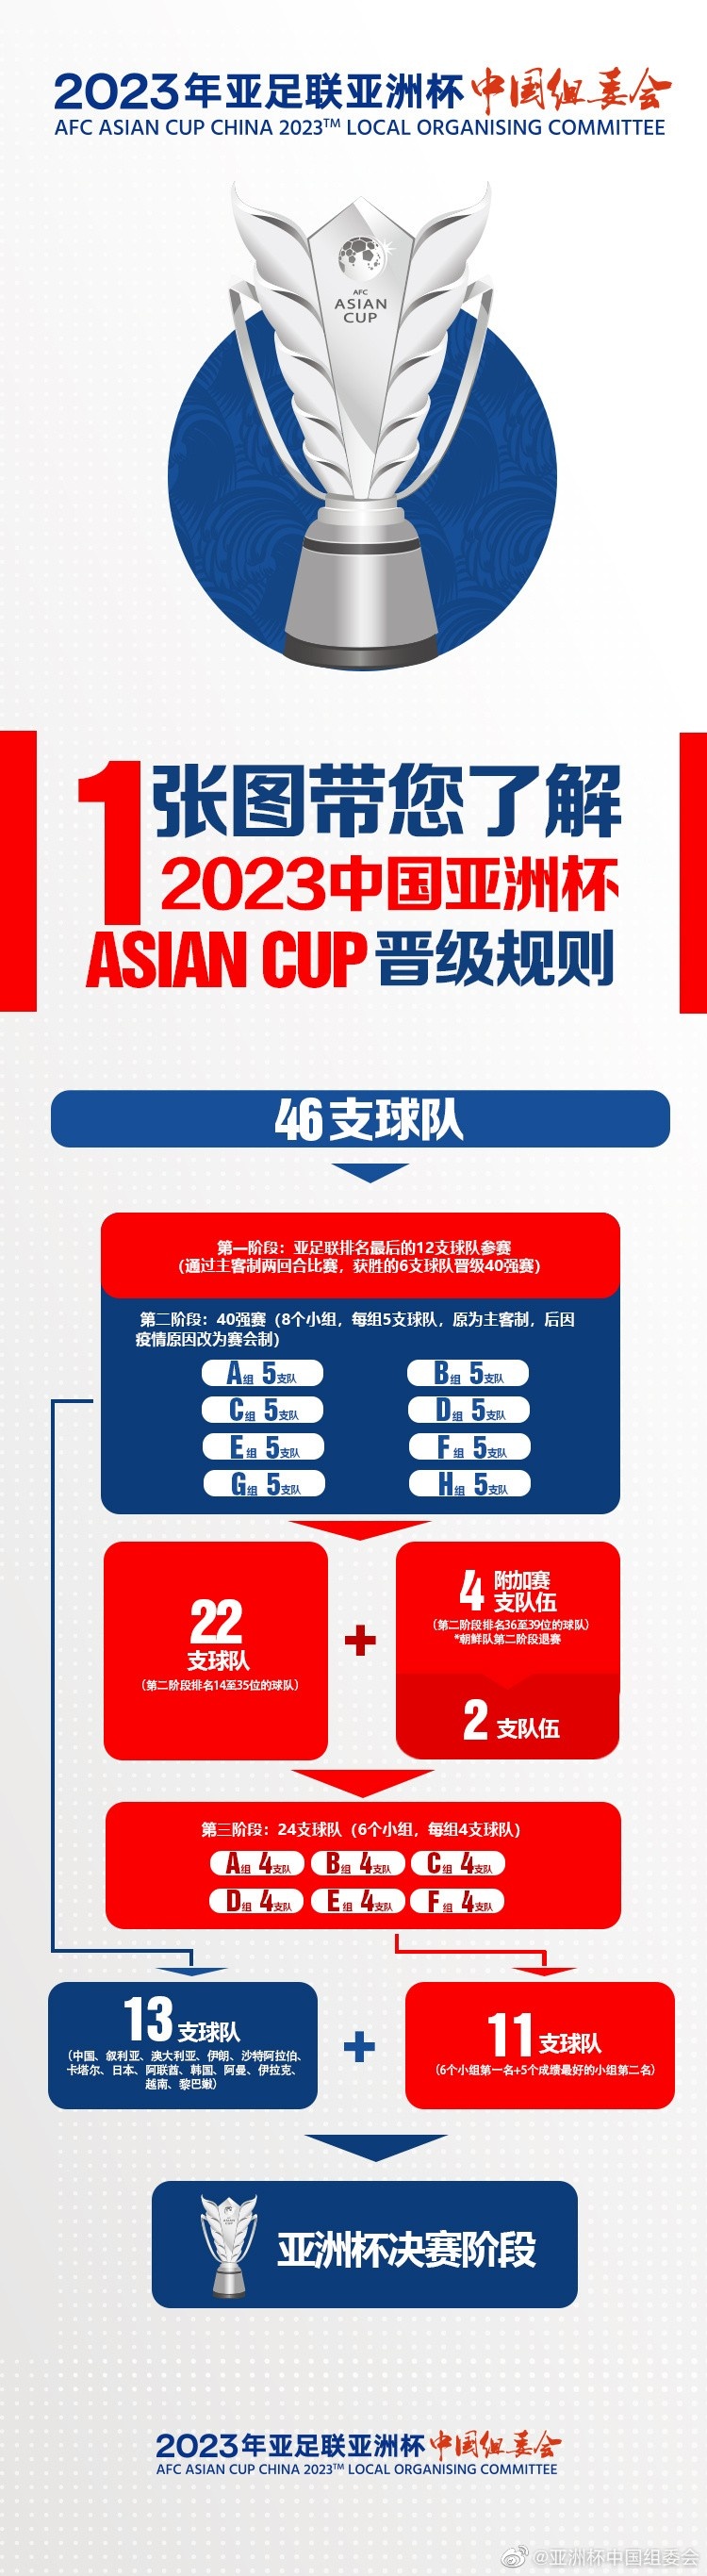 亚洲杯预选赛24队全部产生：包括乌兹、约旦，将决出11个名额